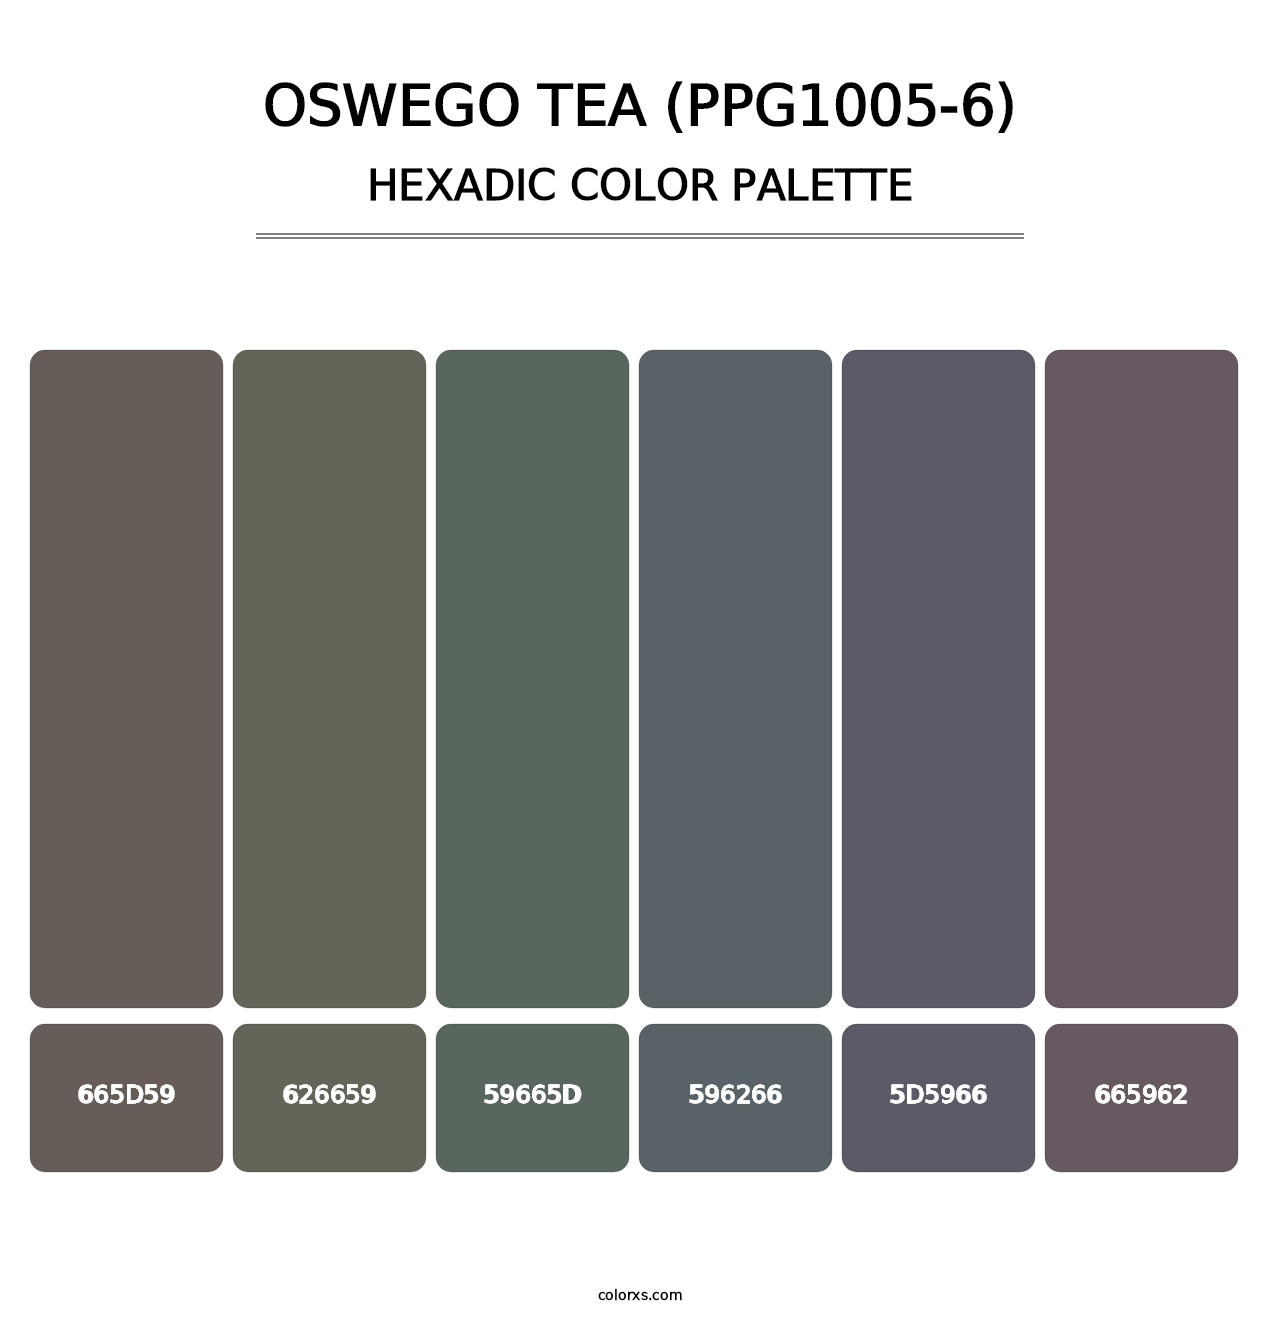 Oswego Tea (PPG1005-6) - Hexadic Color Palette